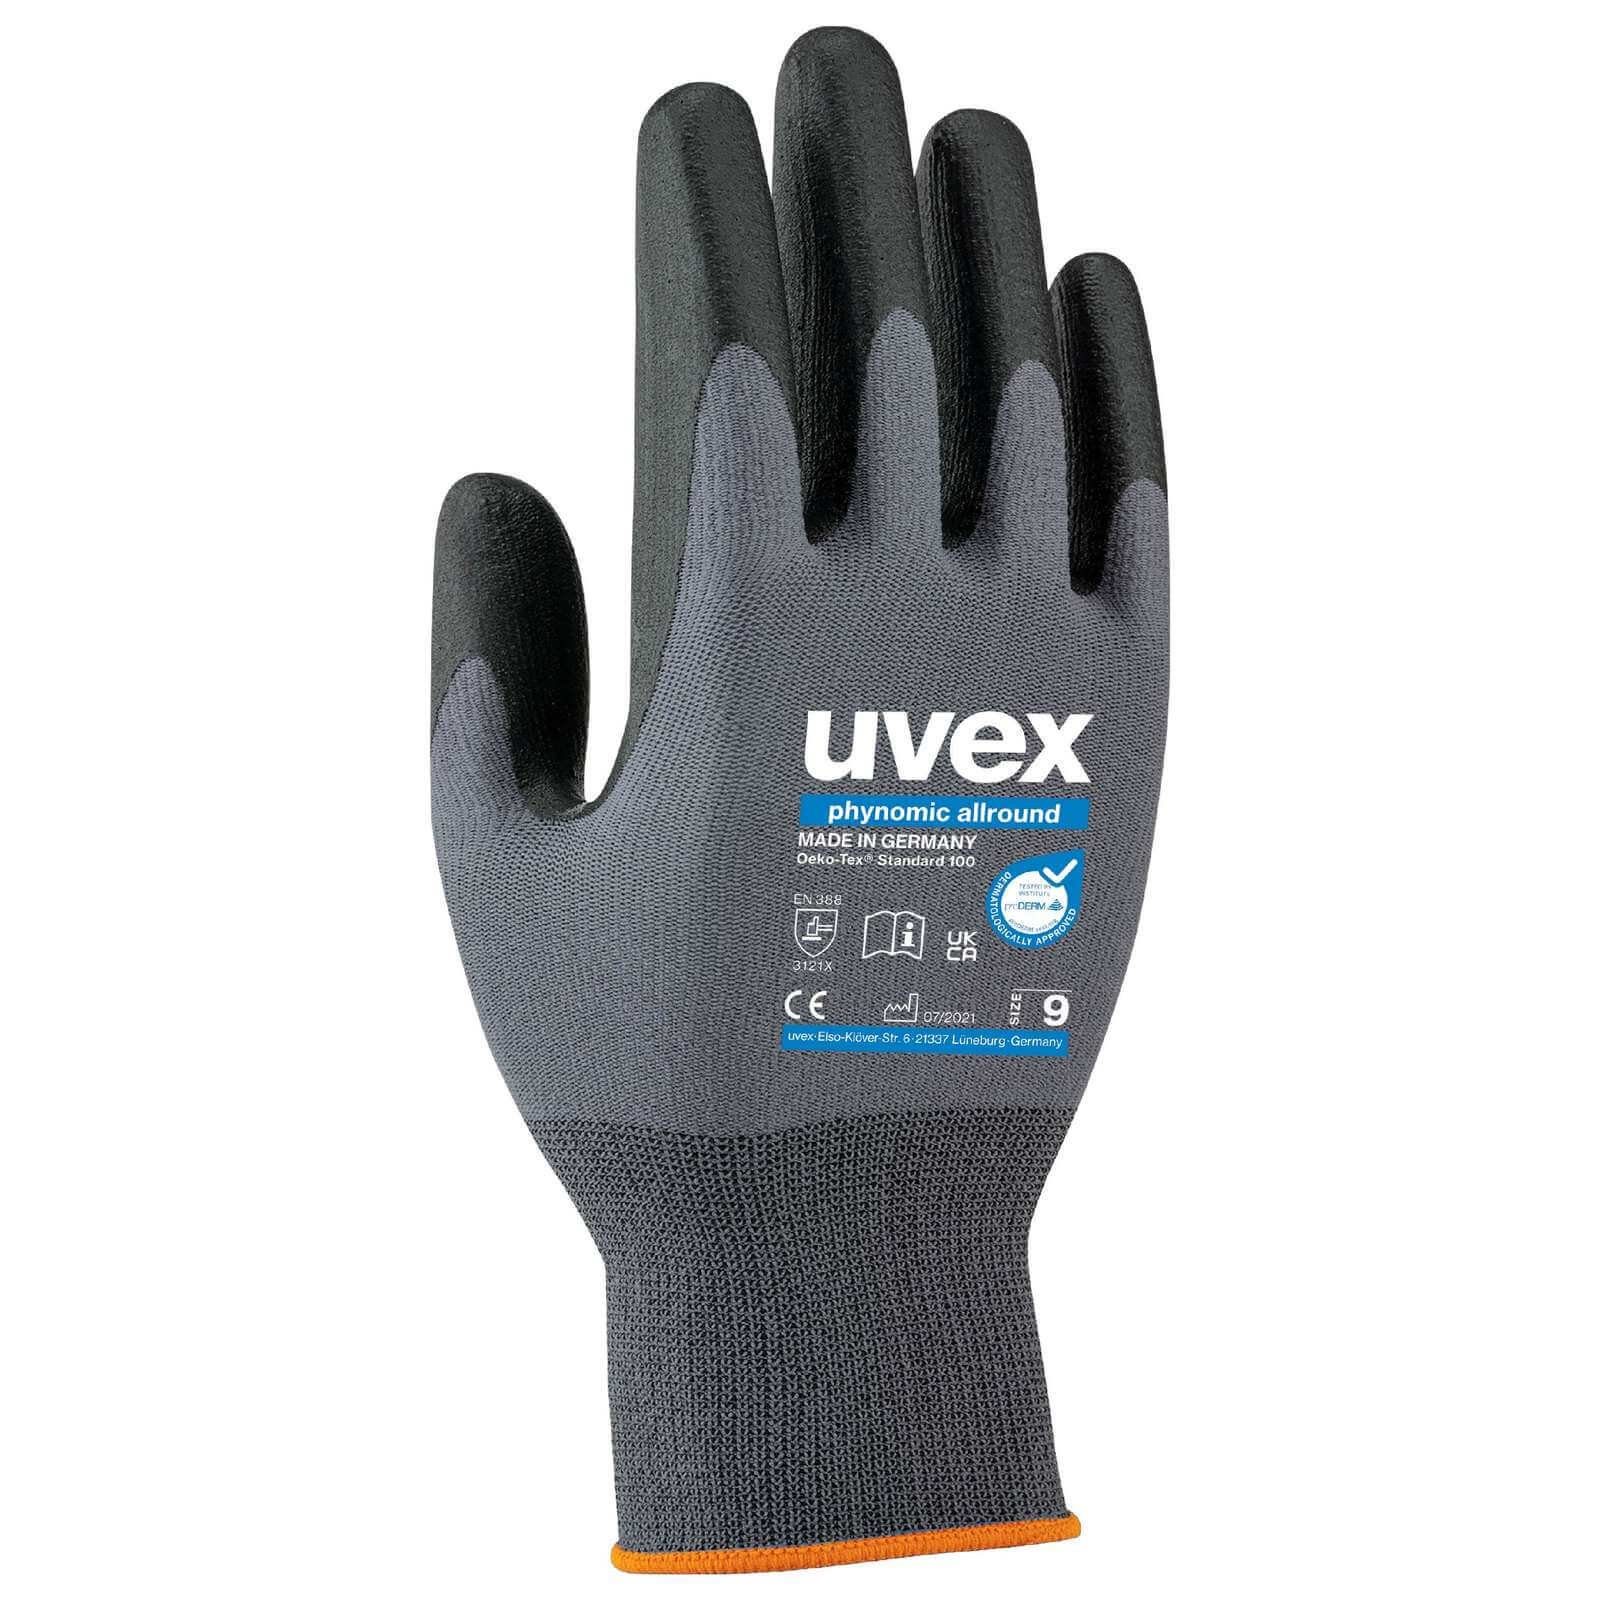 Uvex Mechaniker-Handschuhe uvex Schutzhandschuhe phynomic allround 60049, Allroundhandschuh (Spar-Set)